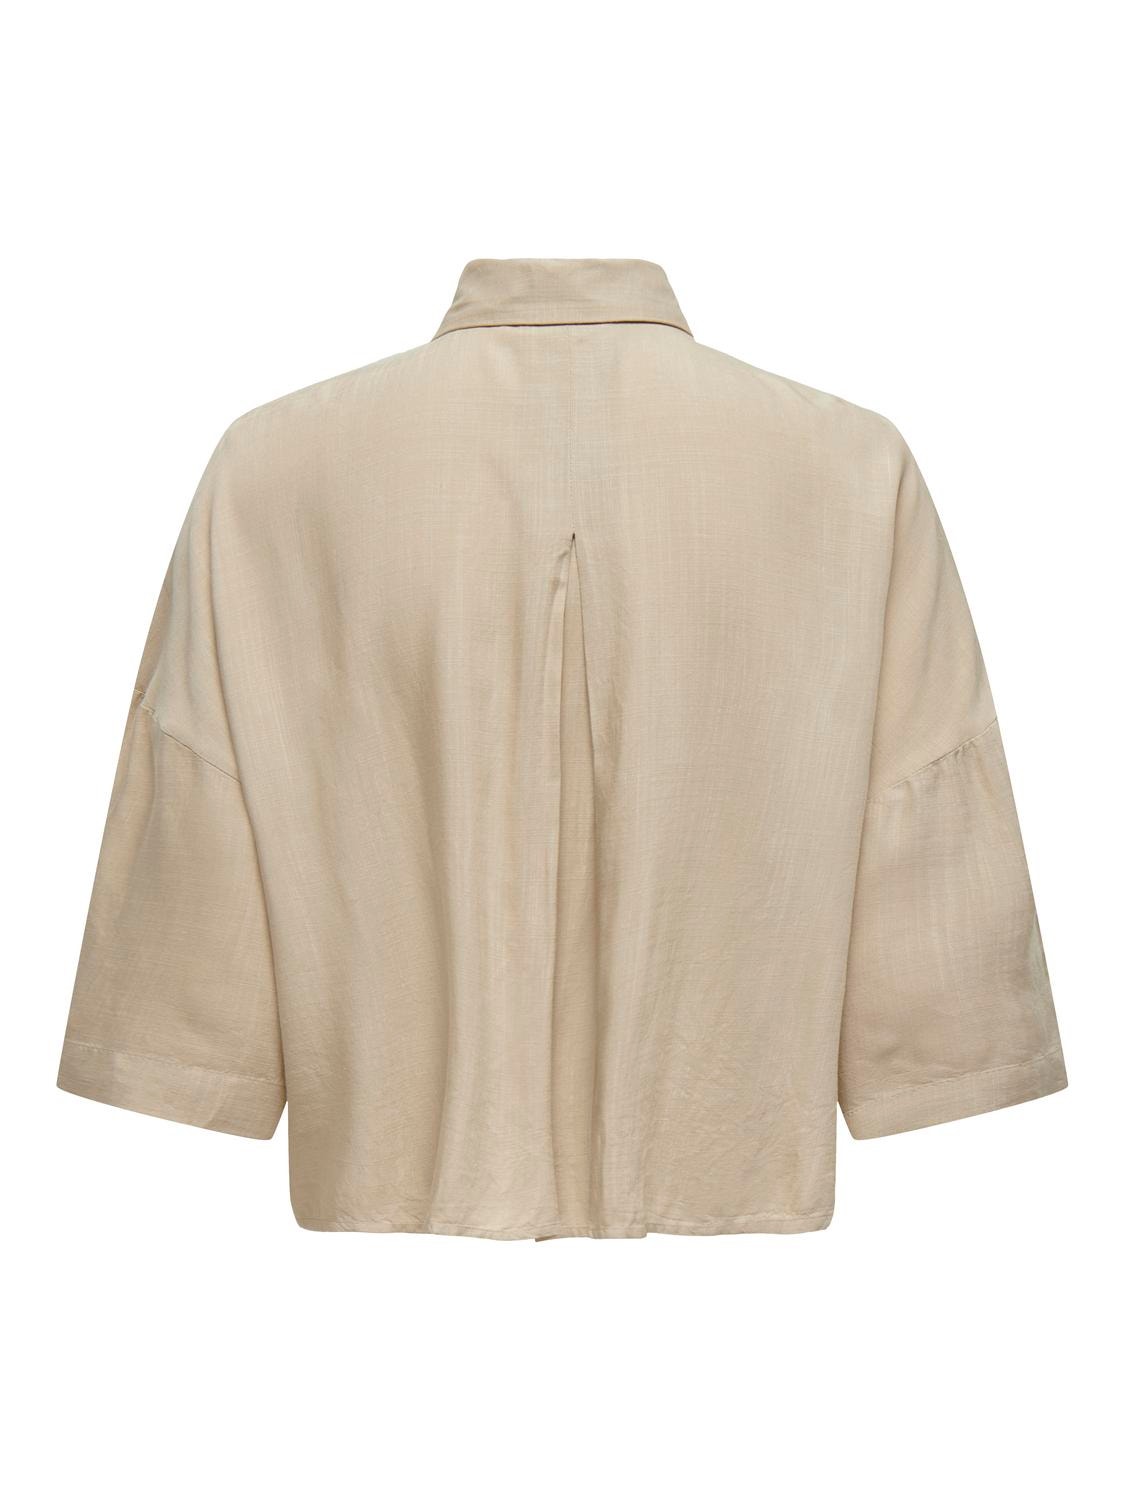 ONLY Camisas Corte regular Cuello de camisa Hombros caídos -Humus - 15307870